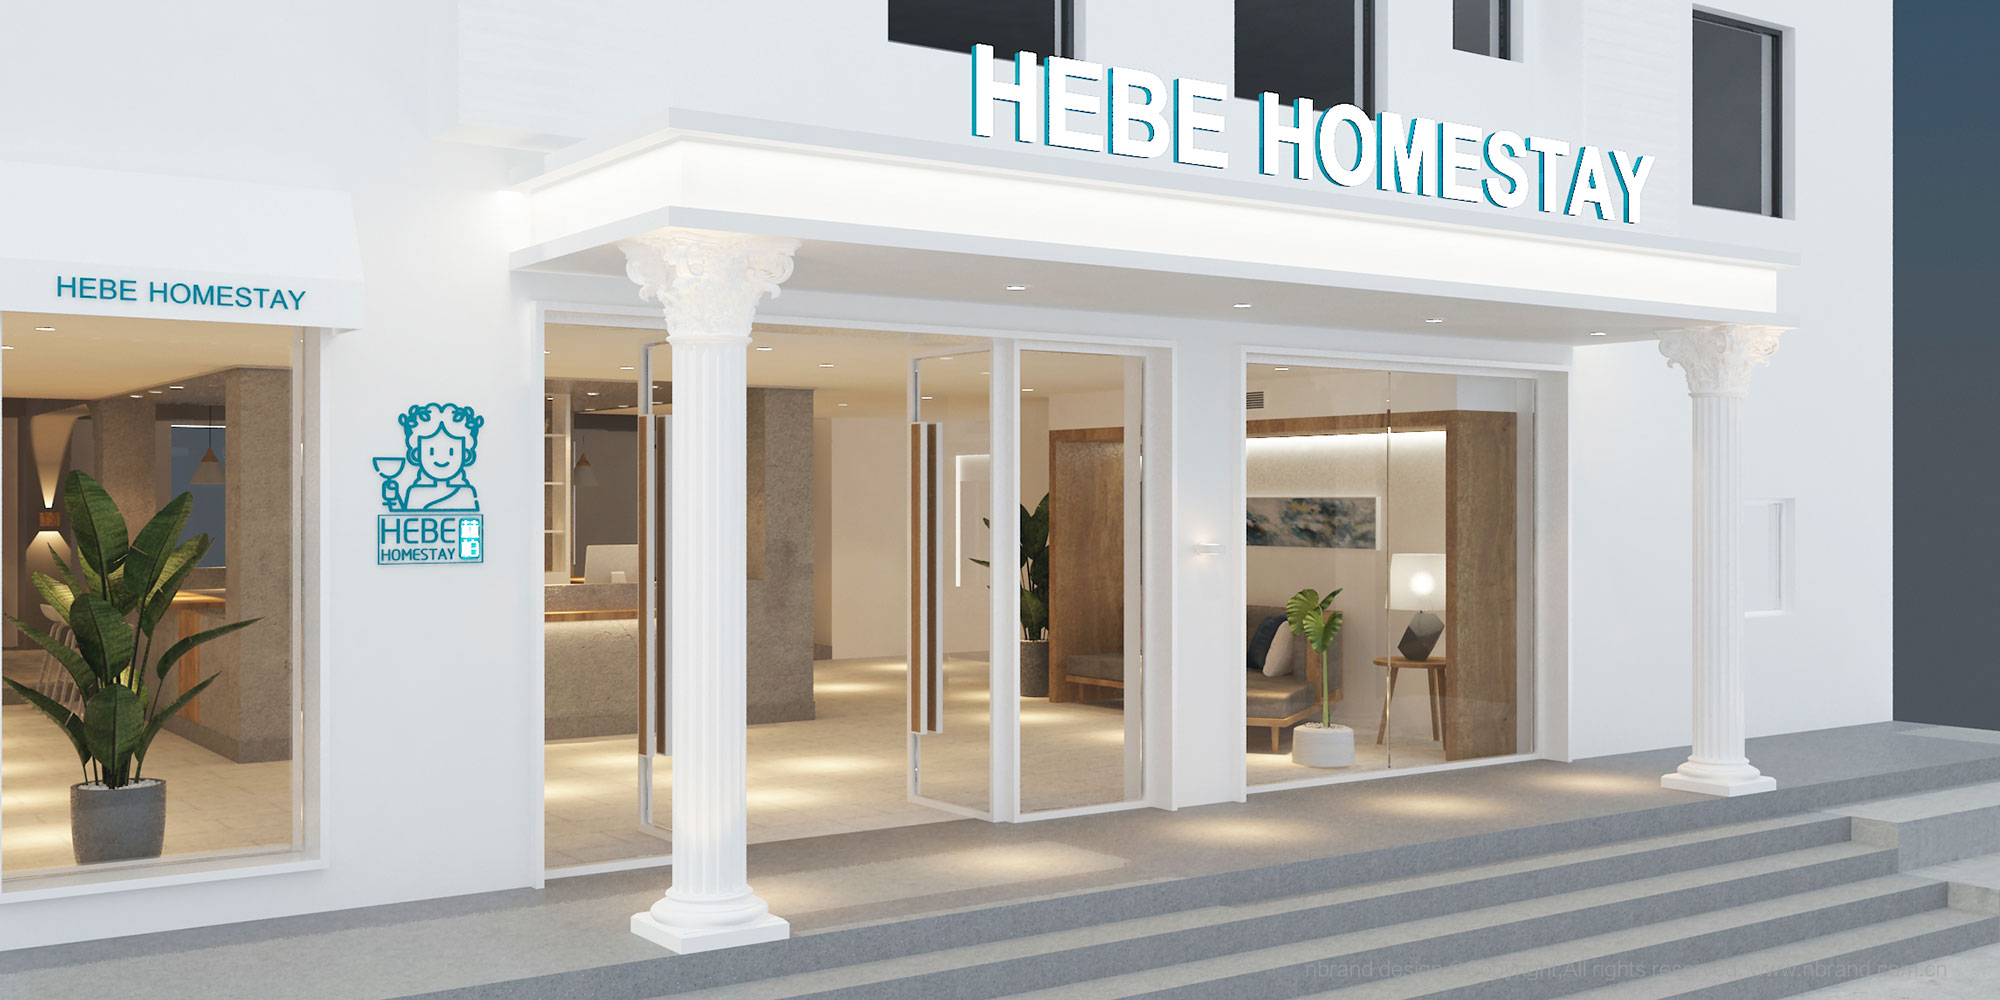 酒店民宿: 赫柏品牌设计、空间设计、软装设计